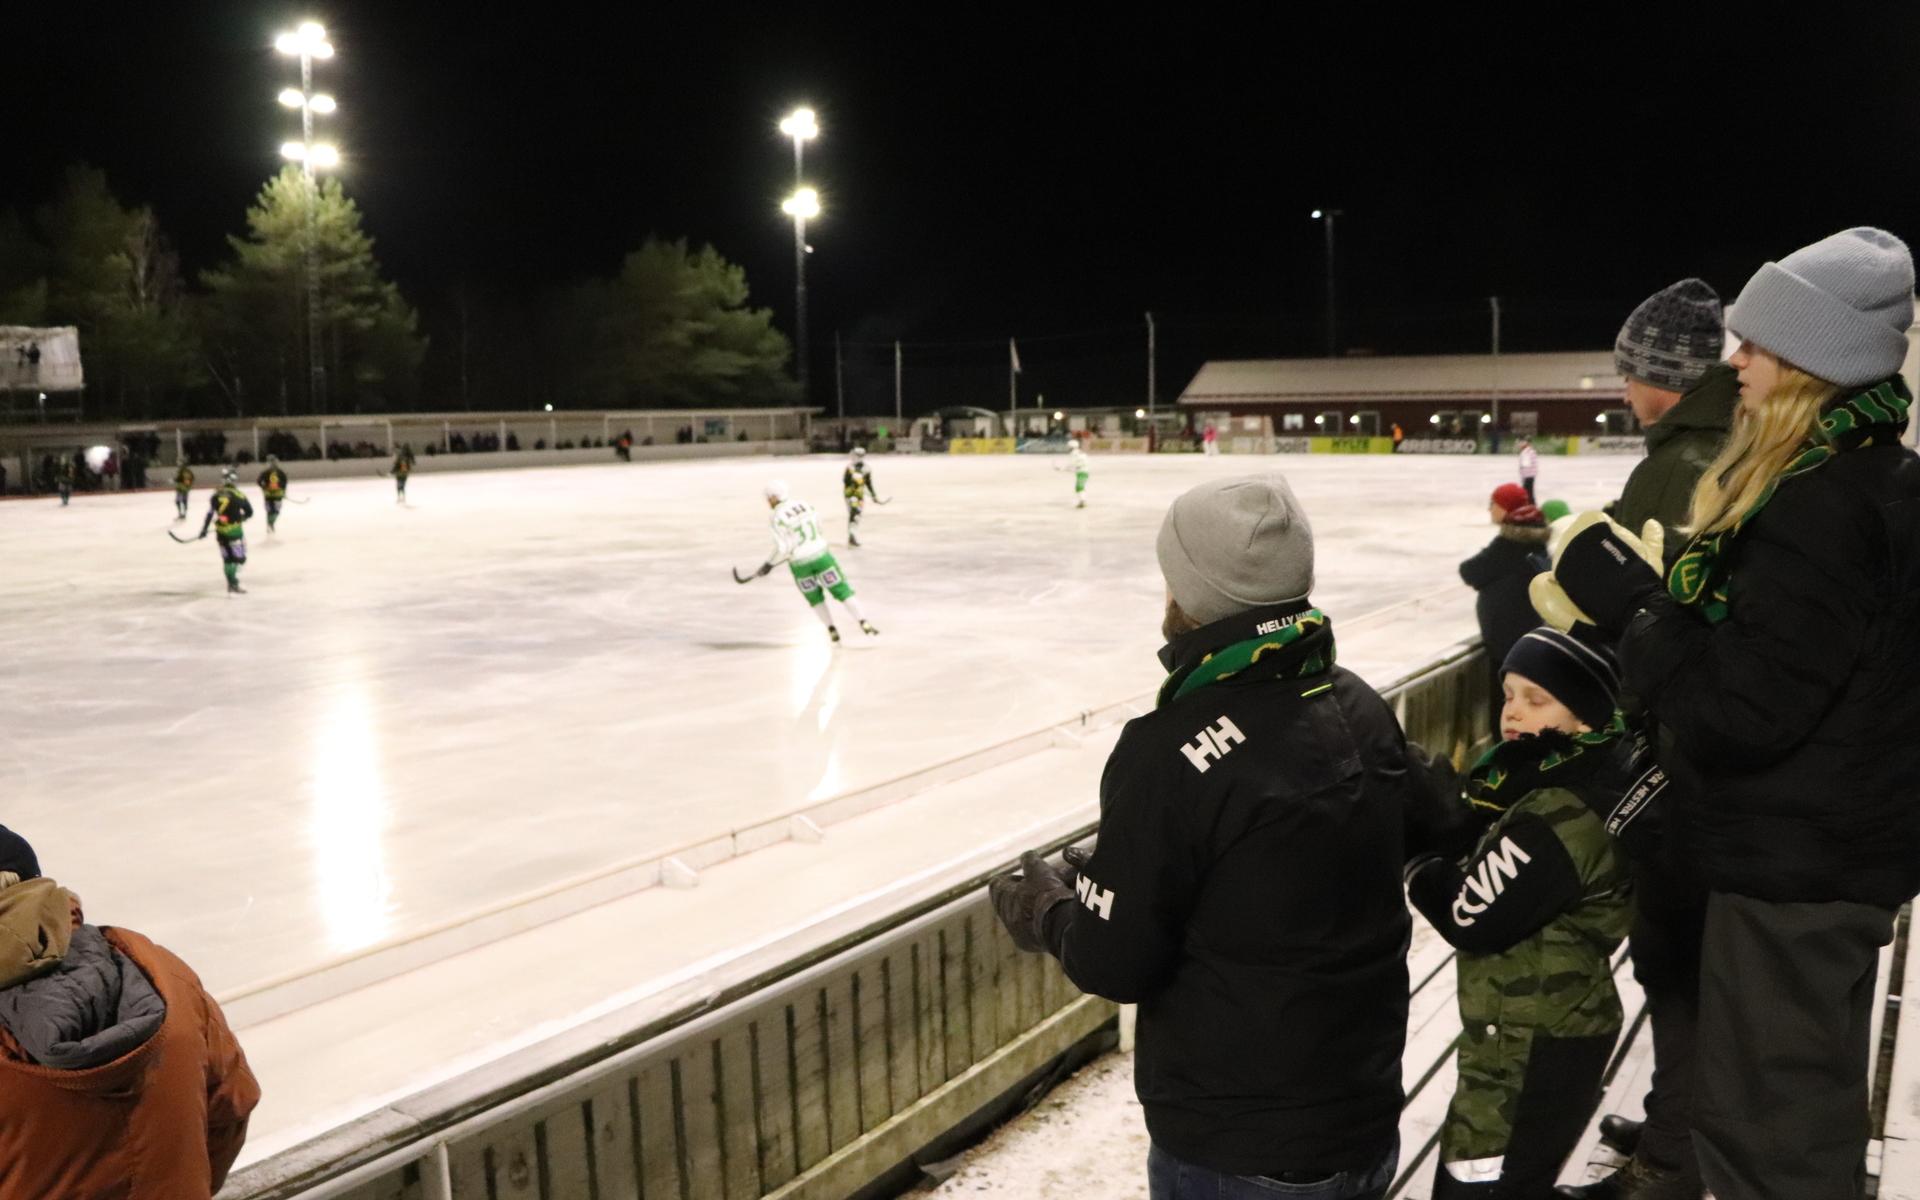 Cirka 350 personer såg matchen mellan FBK och Västerås. Hemmalaget förlorade med 2-6.